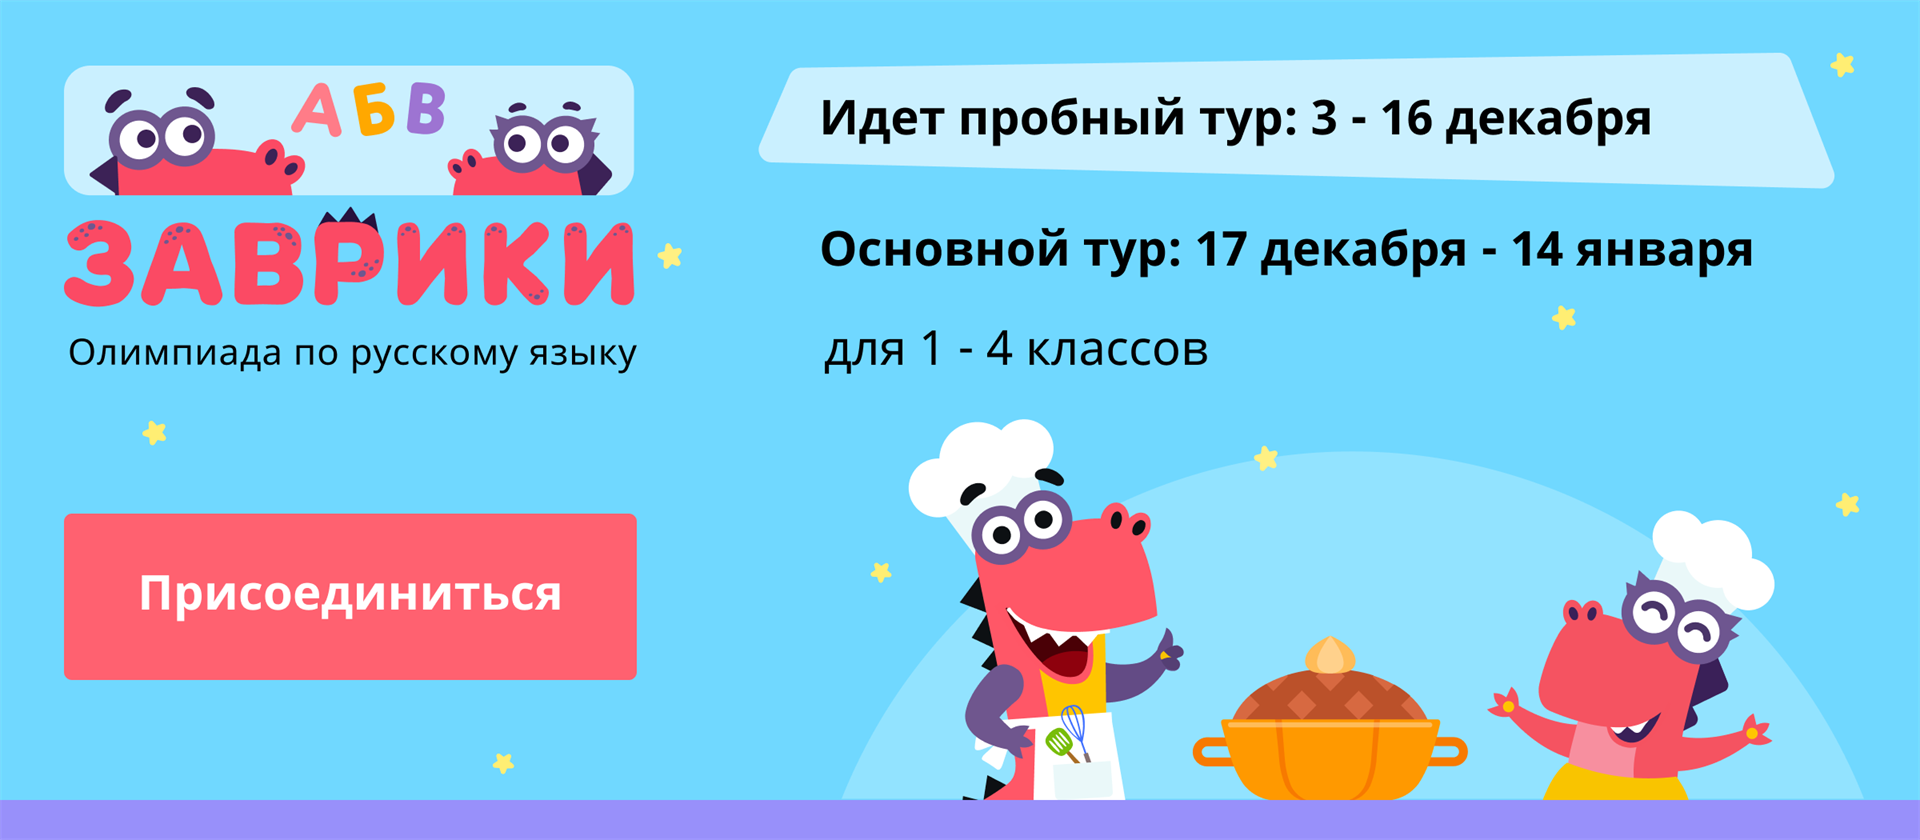 Учи точка ру 9. Учи ру. Основной тур. Пробный тур. Учи ру русский язык.